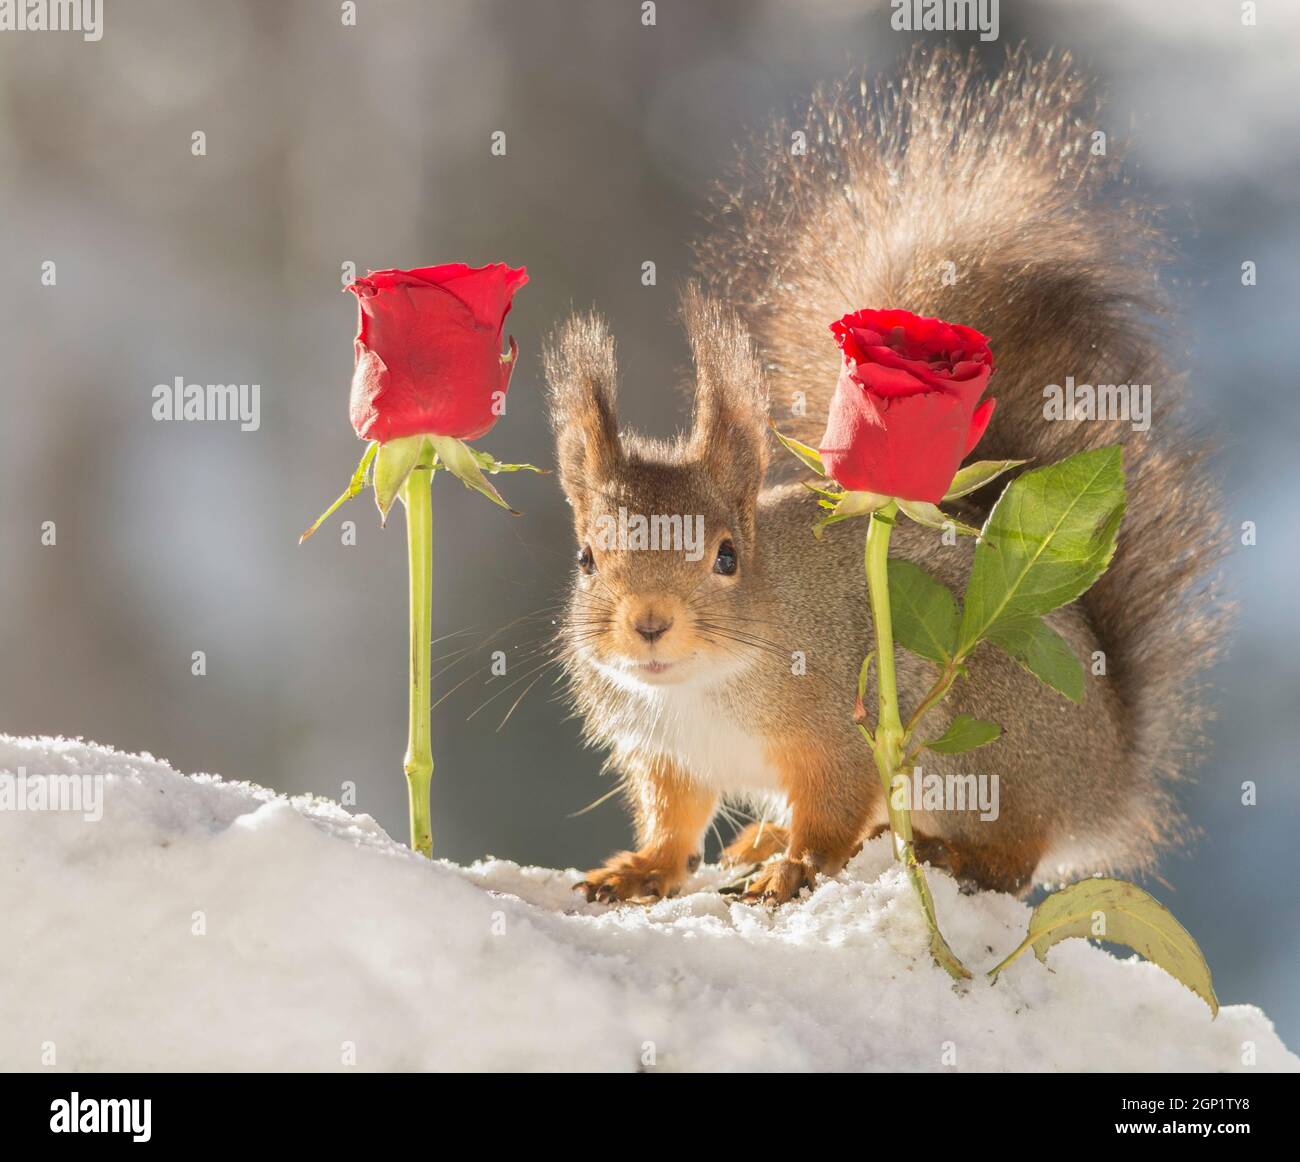 Eichhörnchen mit Schnee stehend zwischen rote Rosen, Blick auf den Betrachter Stockfoto